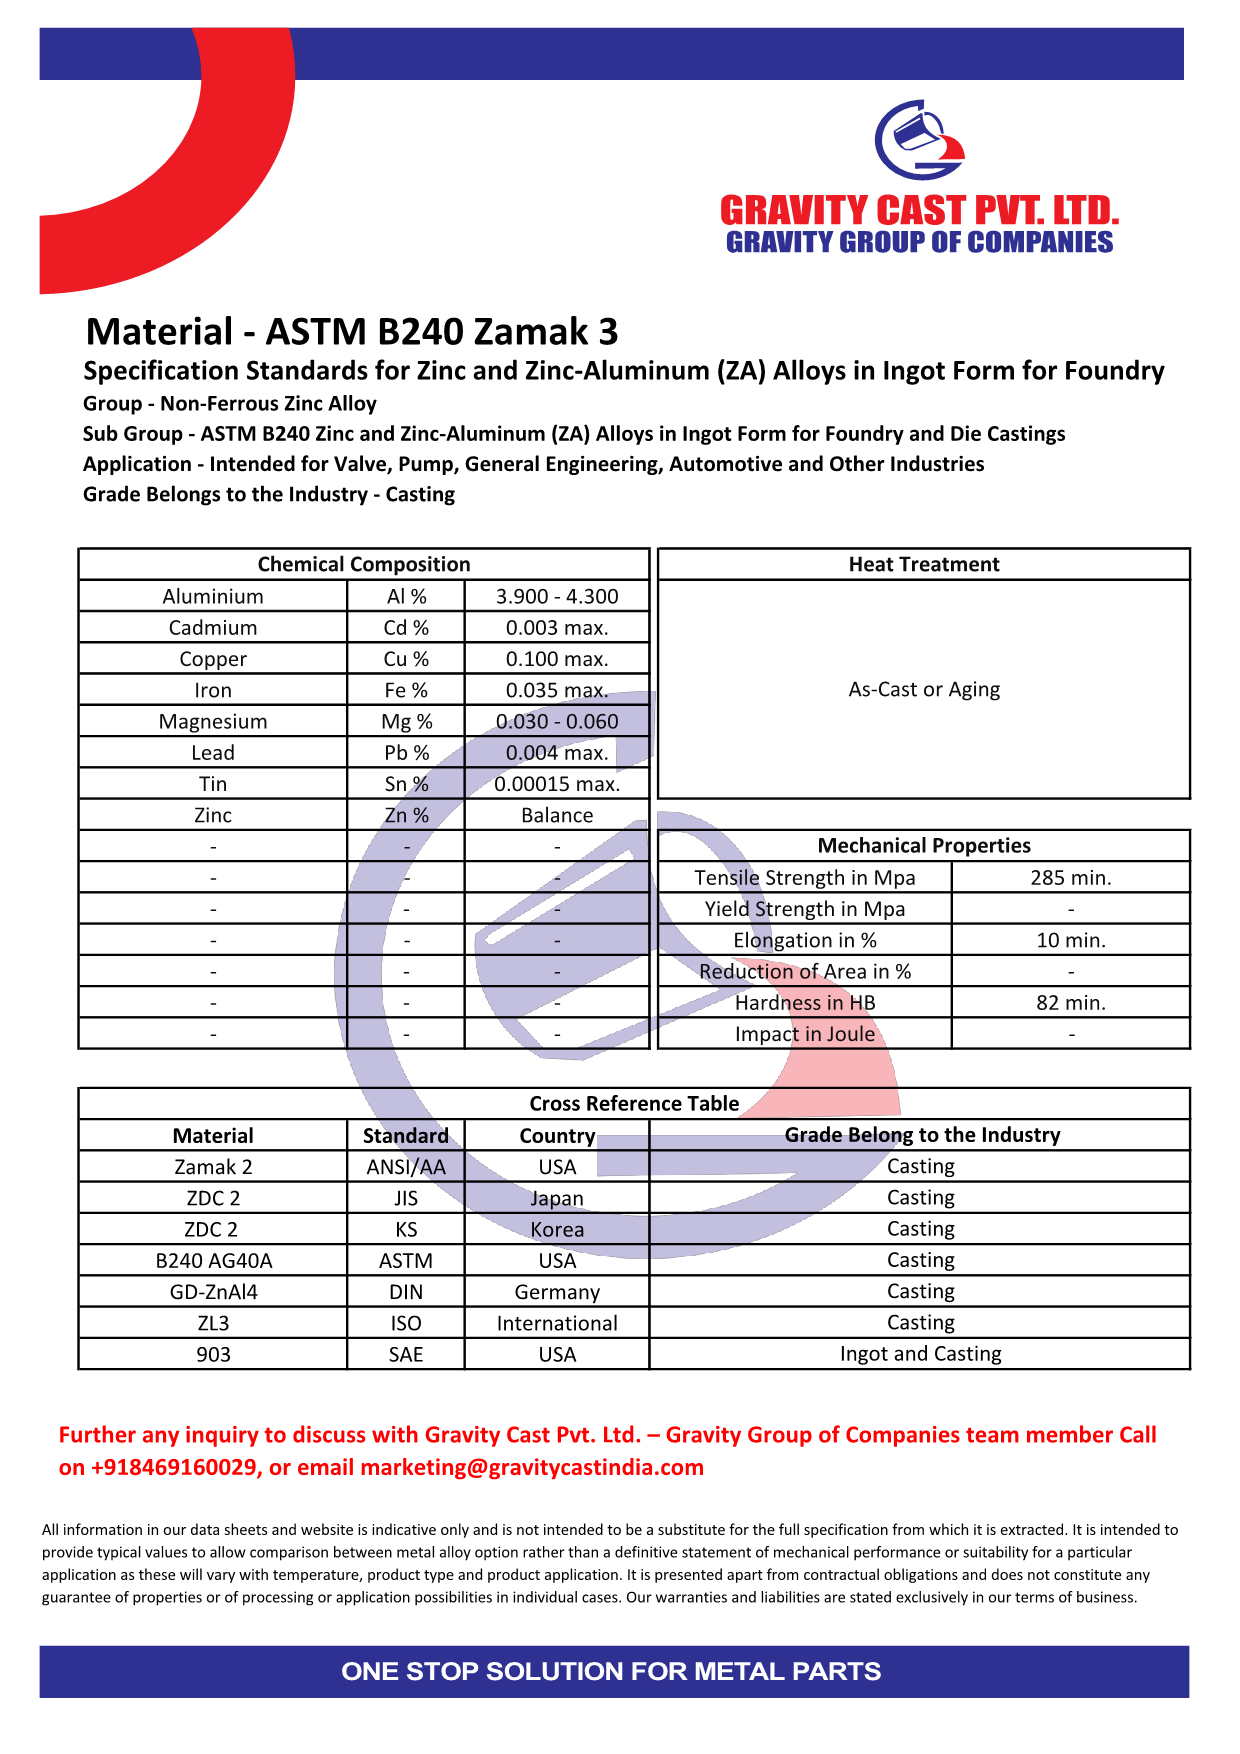 ASTM B240 Zamak 3.pdf